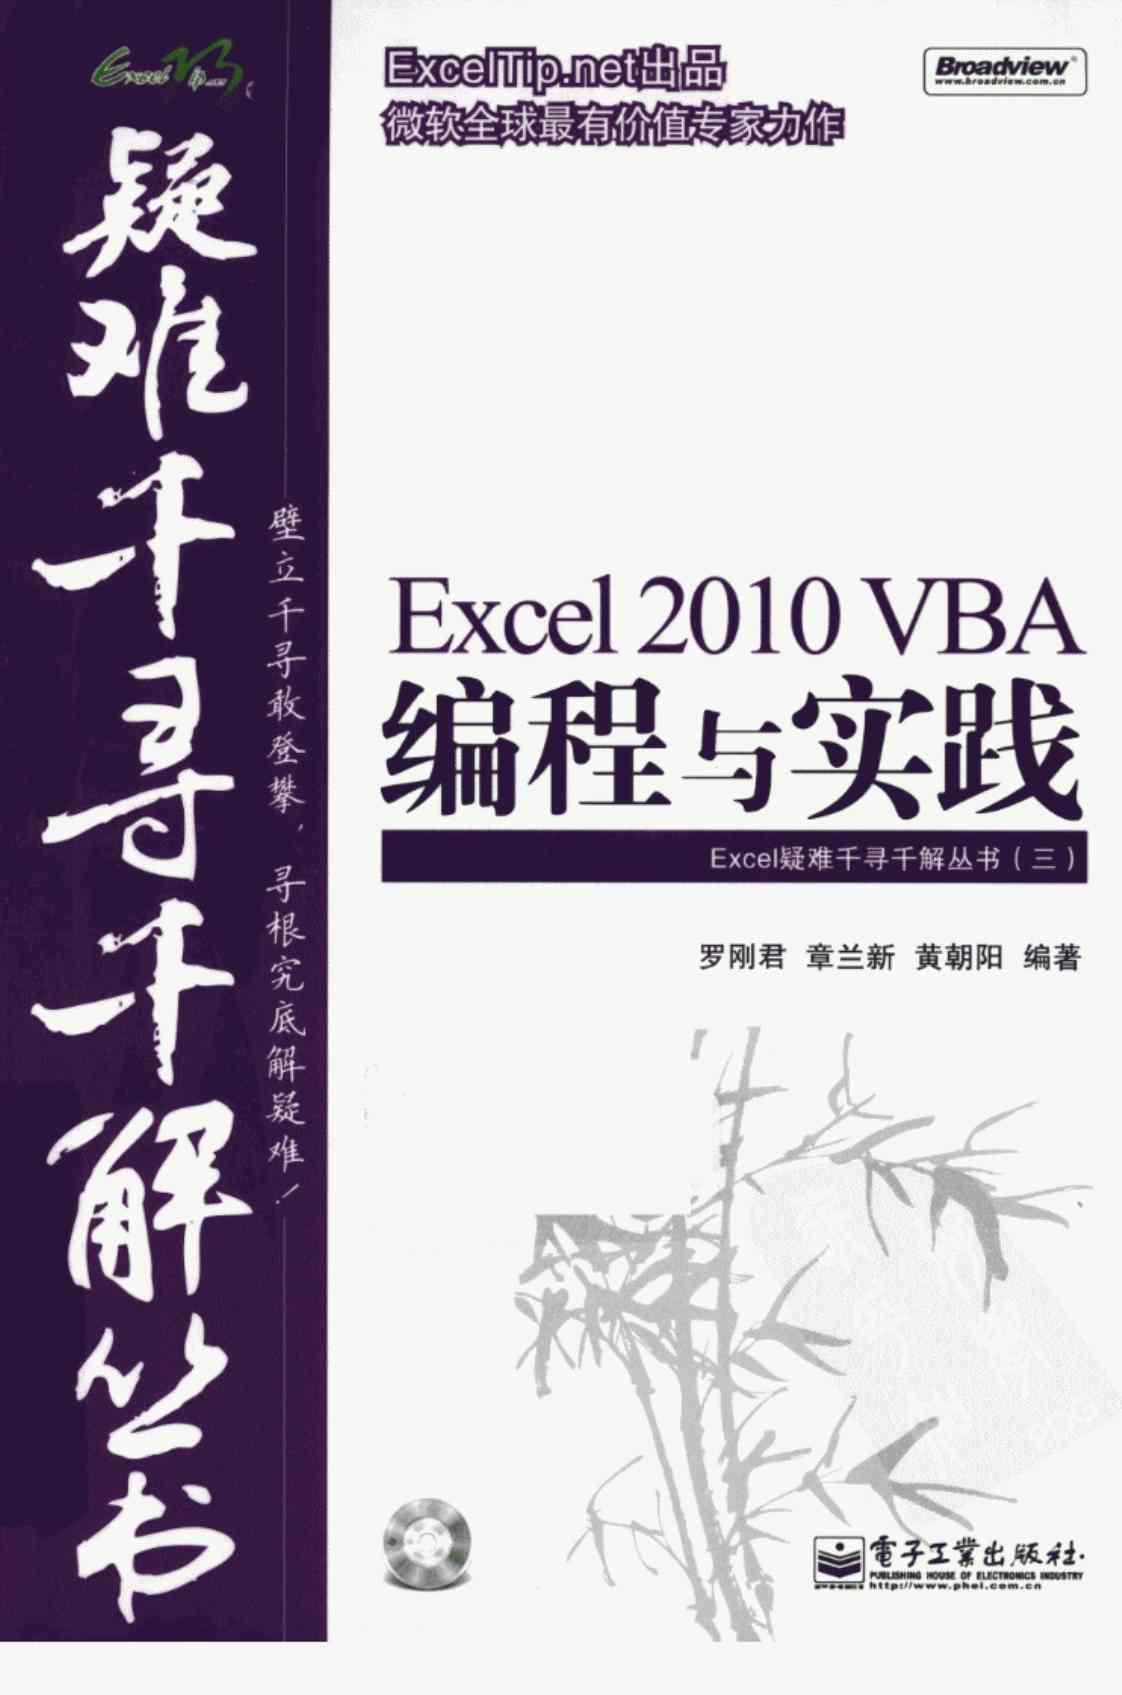 [EXCEL 2010 VBA编程与实践][罗刚君、章兰新、黄朝阳（编著）]高清PDF电子书